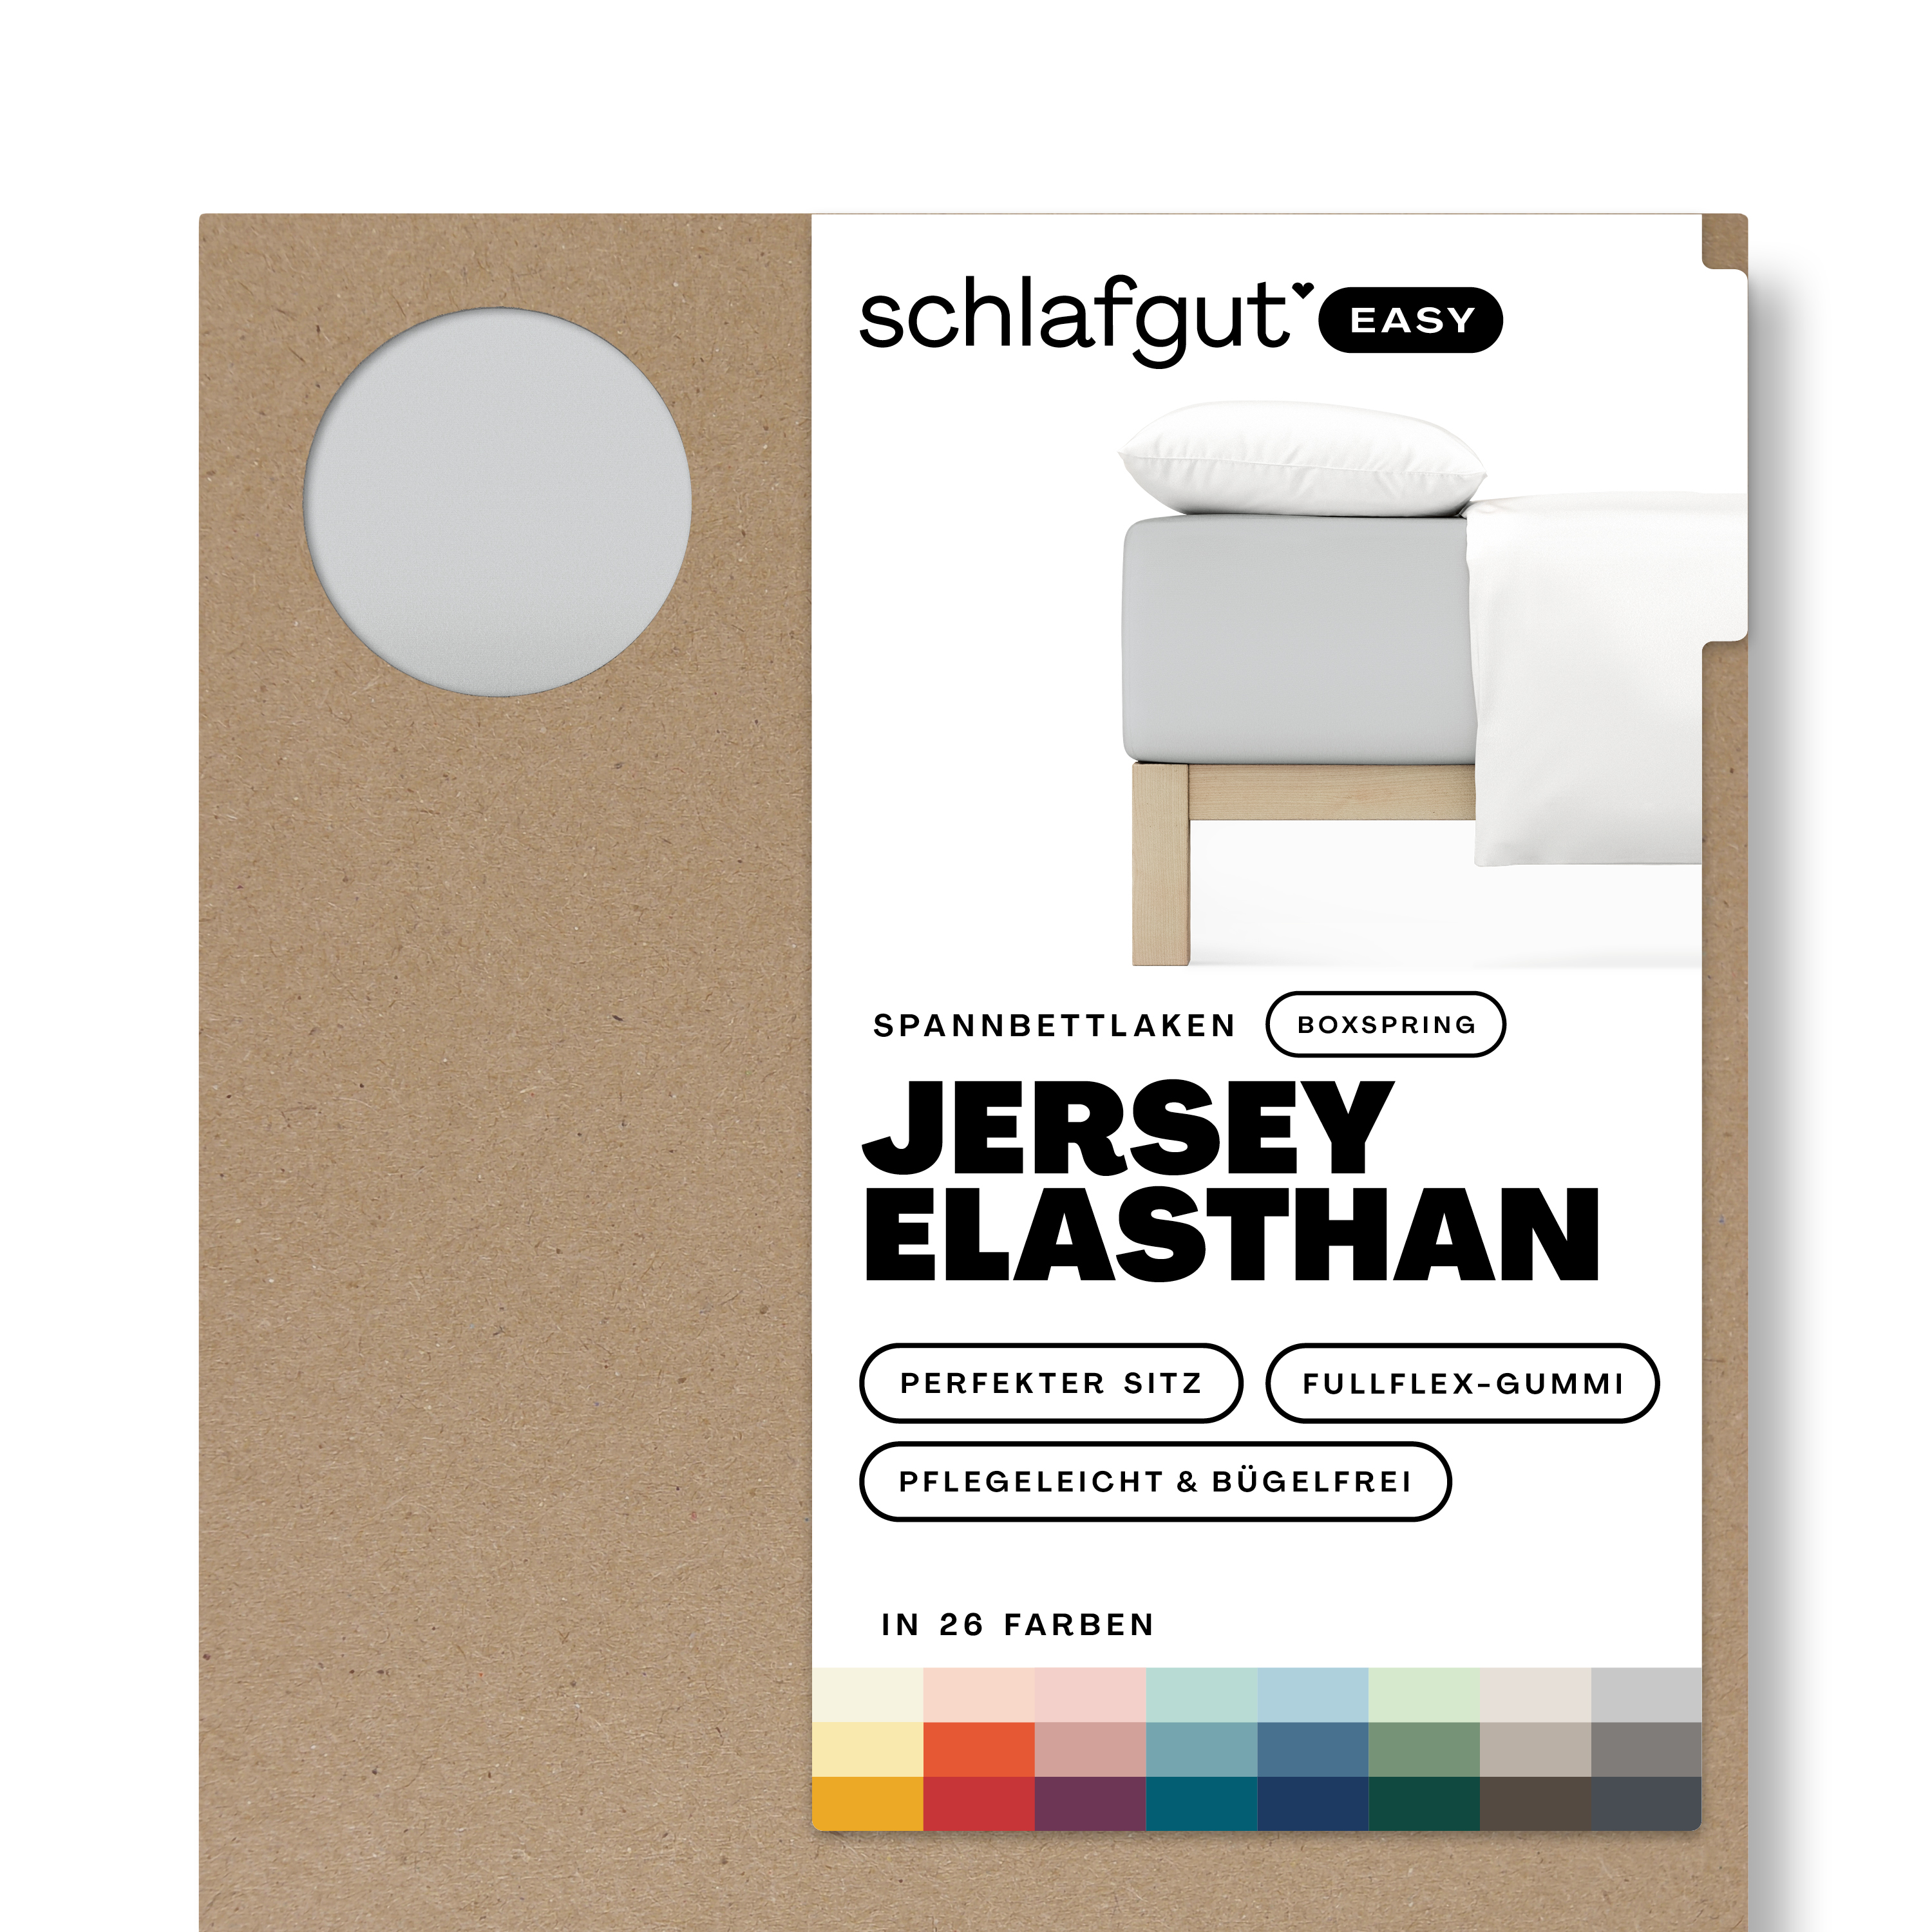 Das Produktbild vom Spannbettlaken der Reihe Easy Elasthan Boxspring in Farbe grey light von Schlafgut